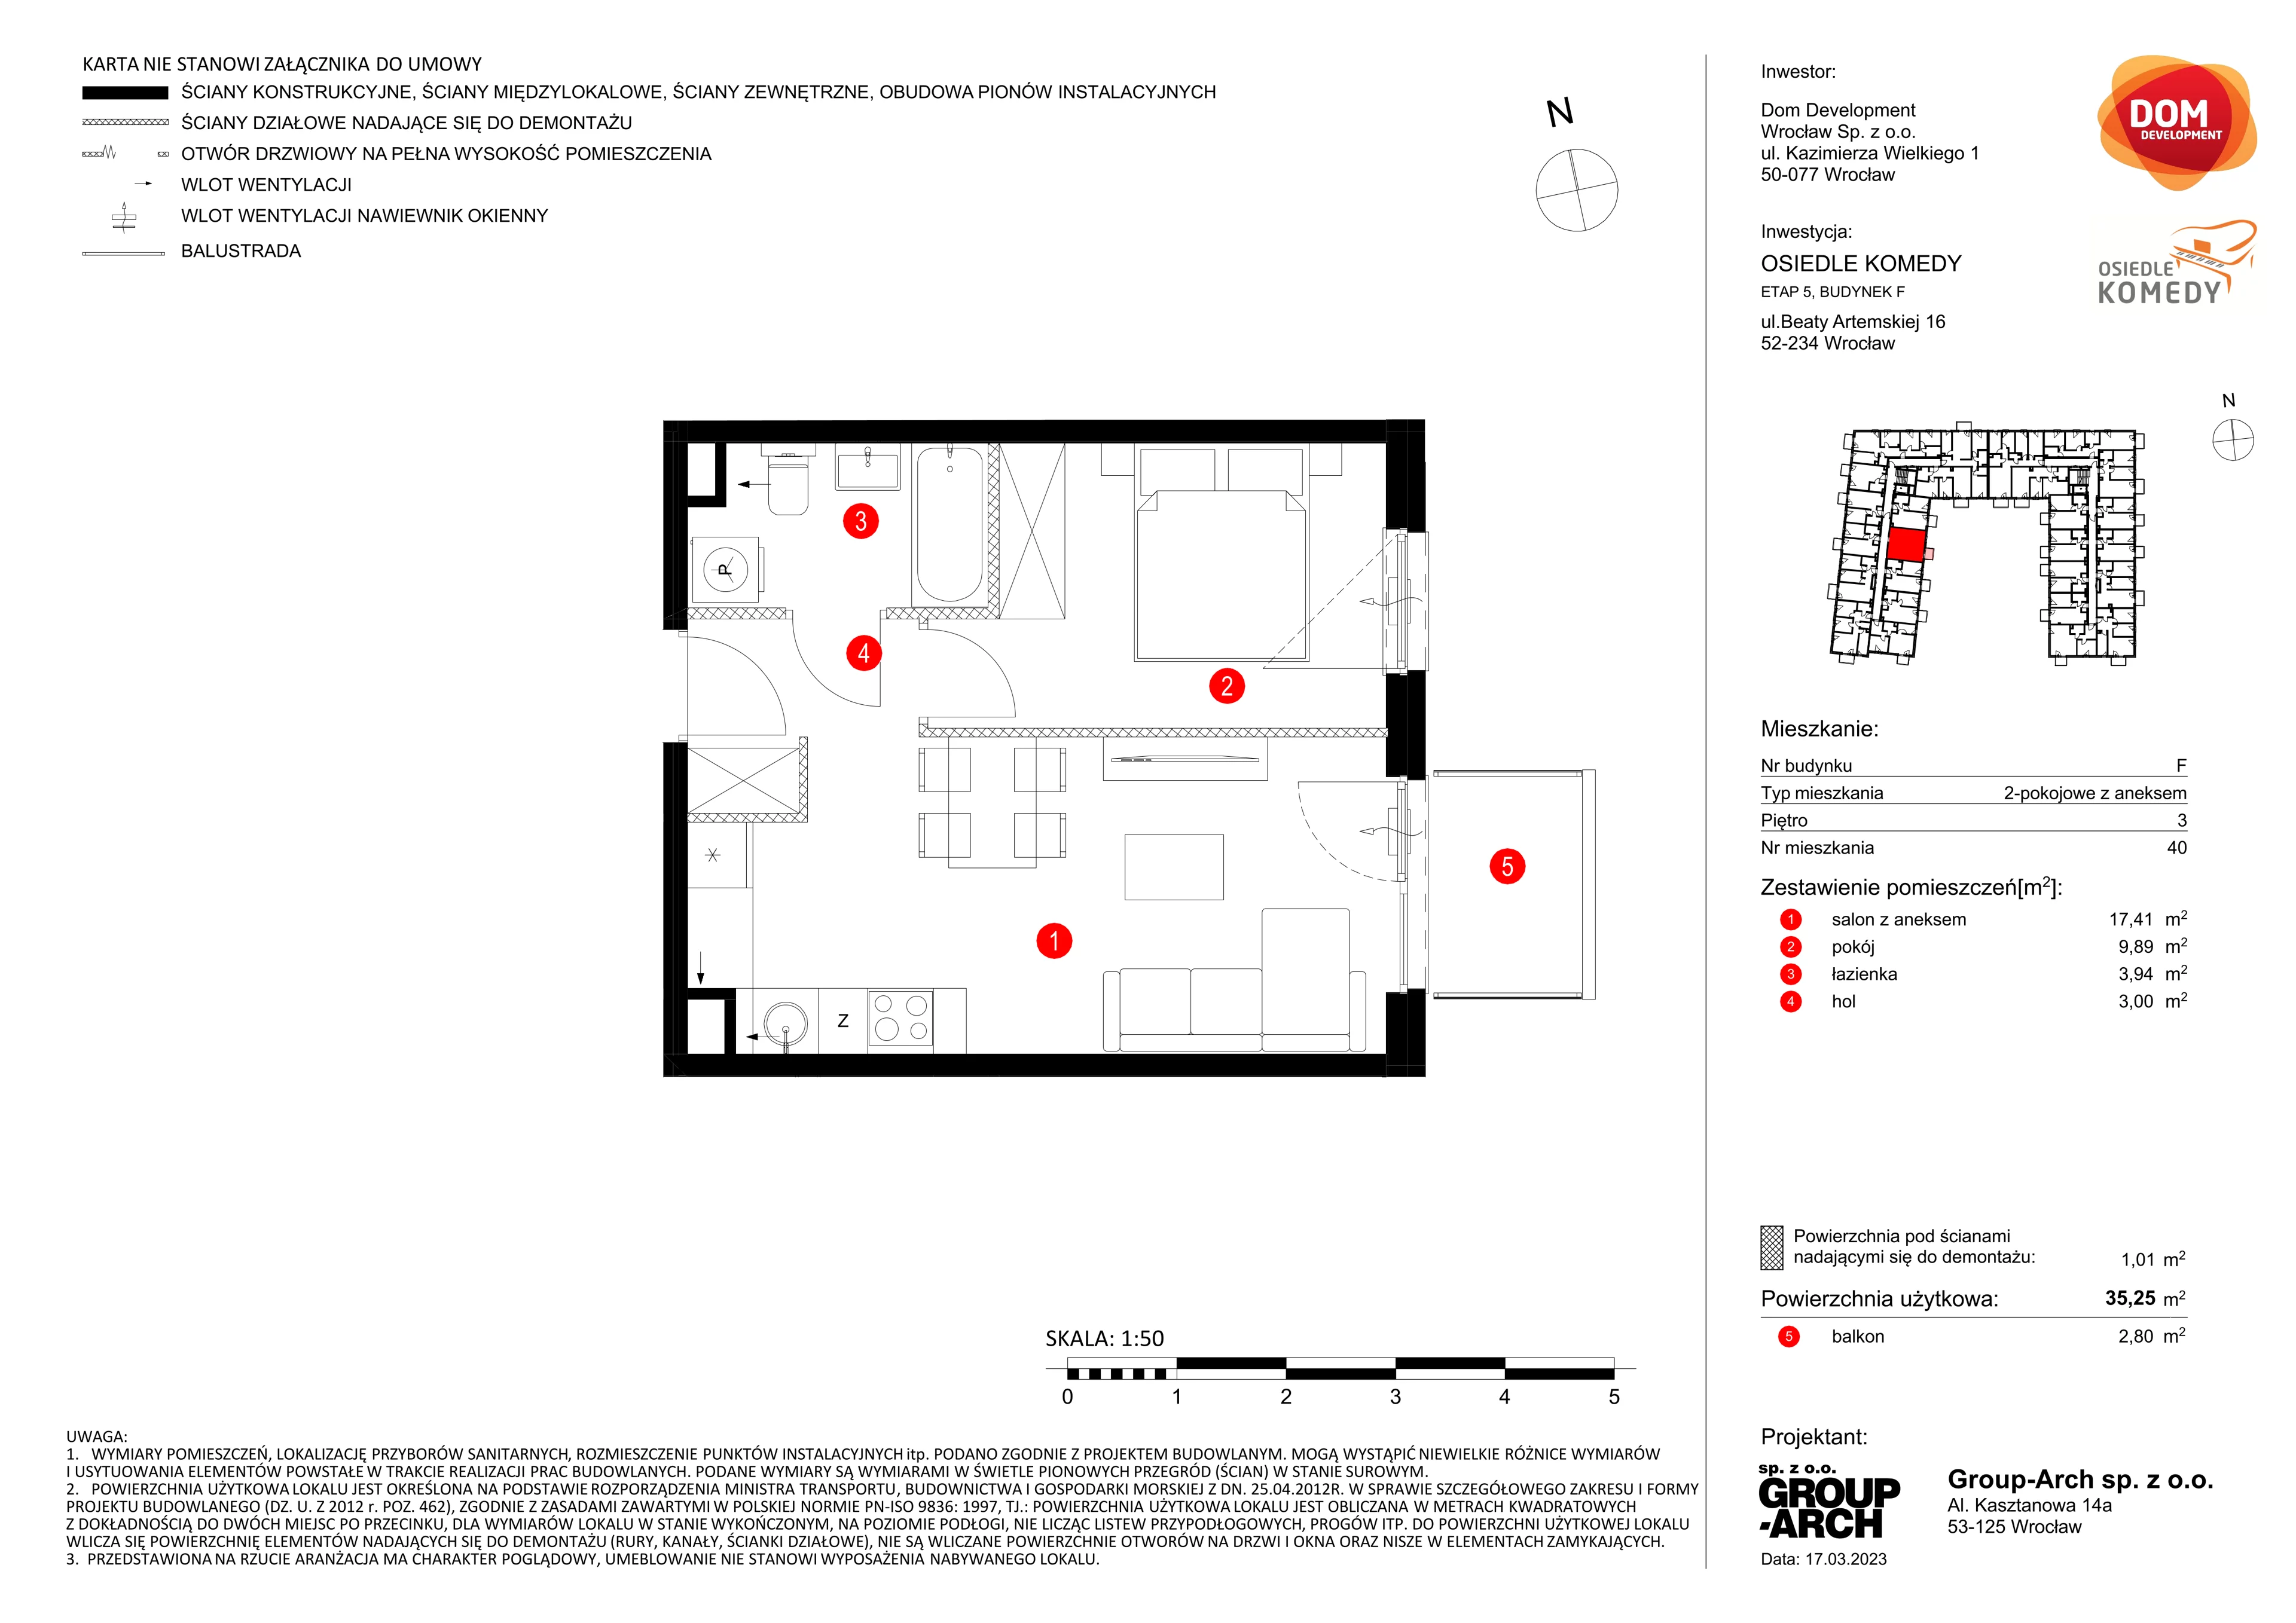 Mieszkanie 35,25 m², piętro 3, oferta nr F/40, Osiedle Komedy, Wrocław, Jagodno, Krzyki, ul. Komedy 1B